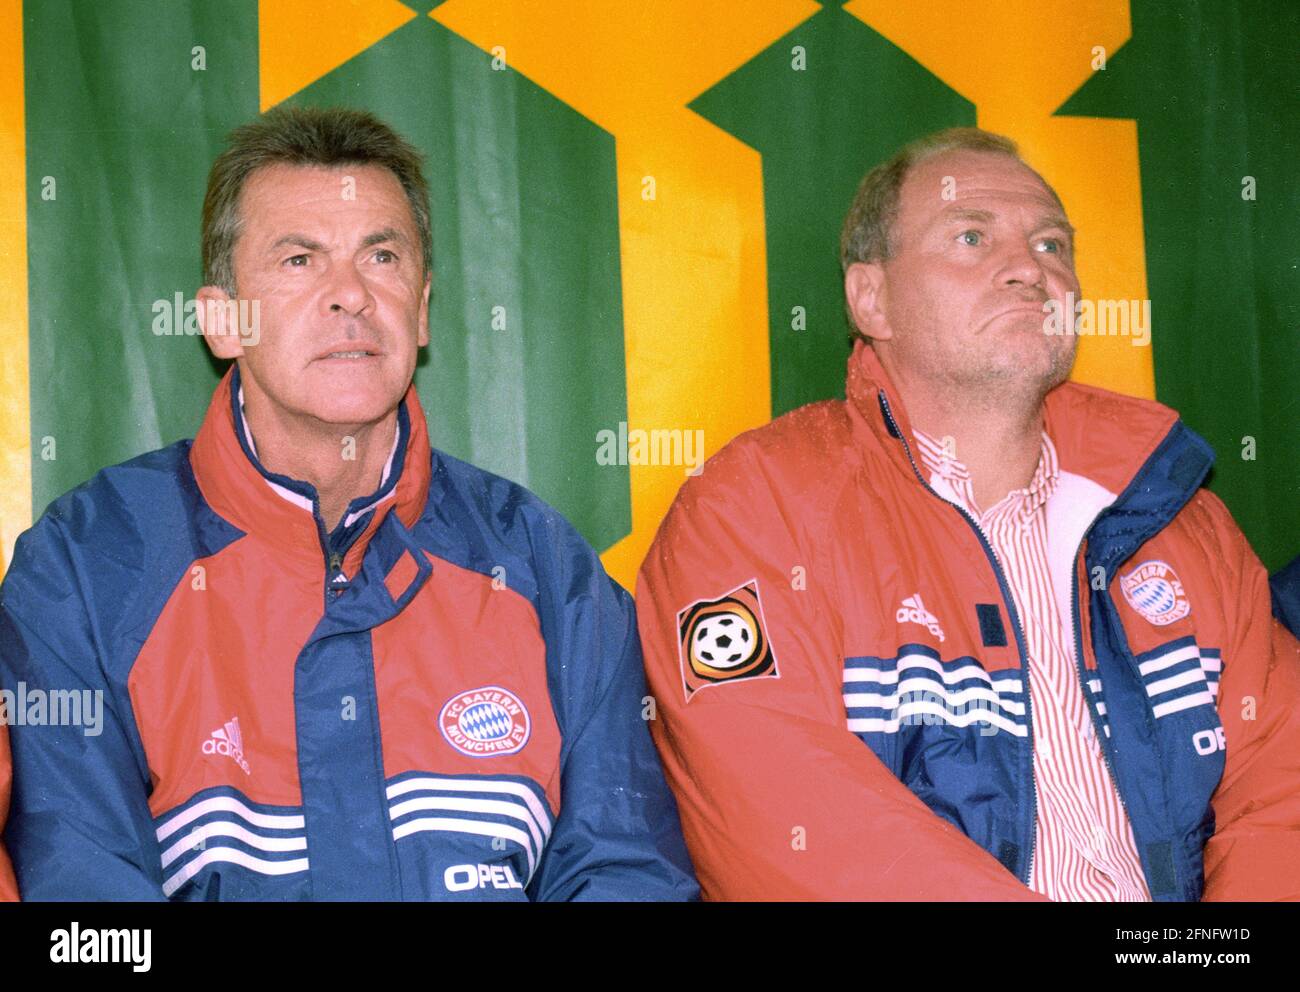 Ottmar Hitzfeld (izquierda) como entrenador del FC Bayern Munich y gerente Uli Hoeneß Rec. 29.07.1998. DFL REGULA PROHIBIR EL USO DE FOTOGRAFÍAS COMO SECUENCIAS DE IMÁGENES Y/O CUASI-VÍDEO [TRADUCCIÓN AUTOMÁTICA] Foto de stock